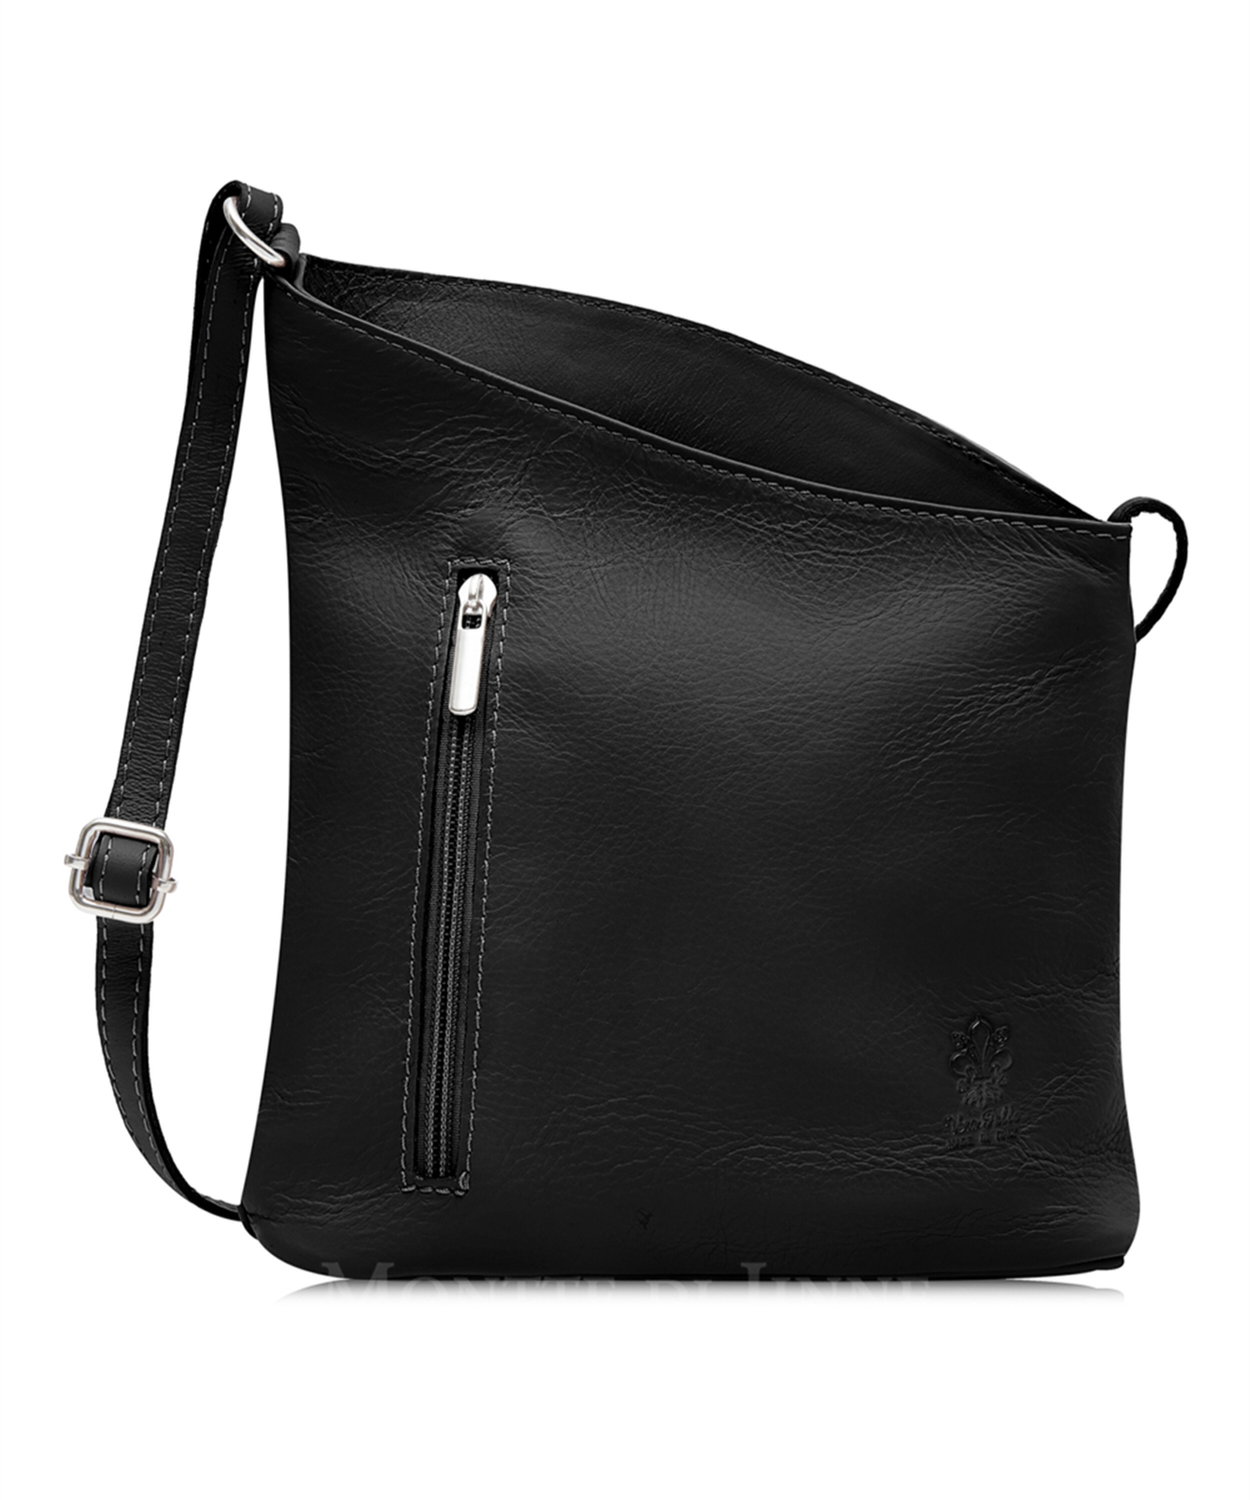 Black Soft Leather Angled Shoulder Bag 